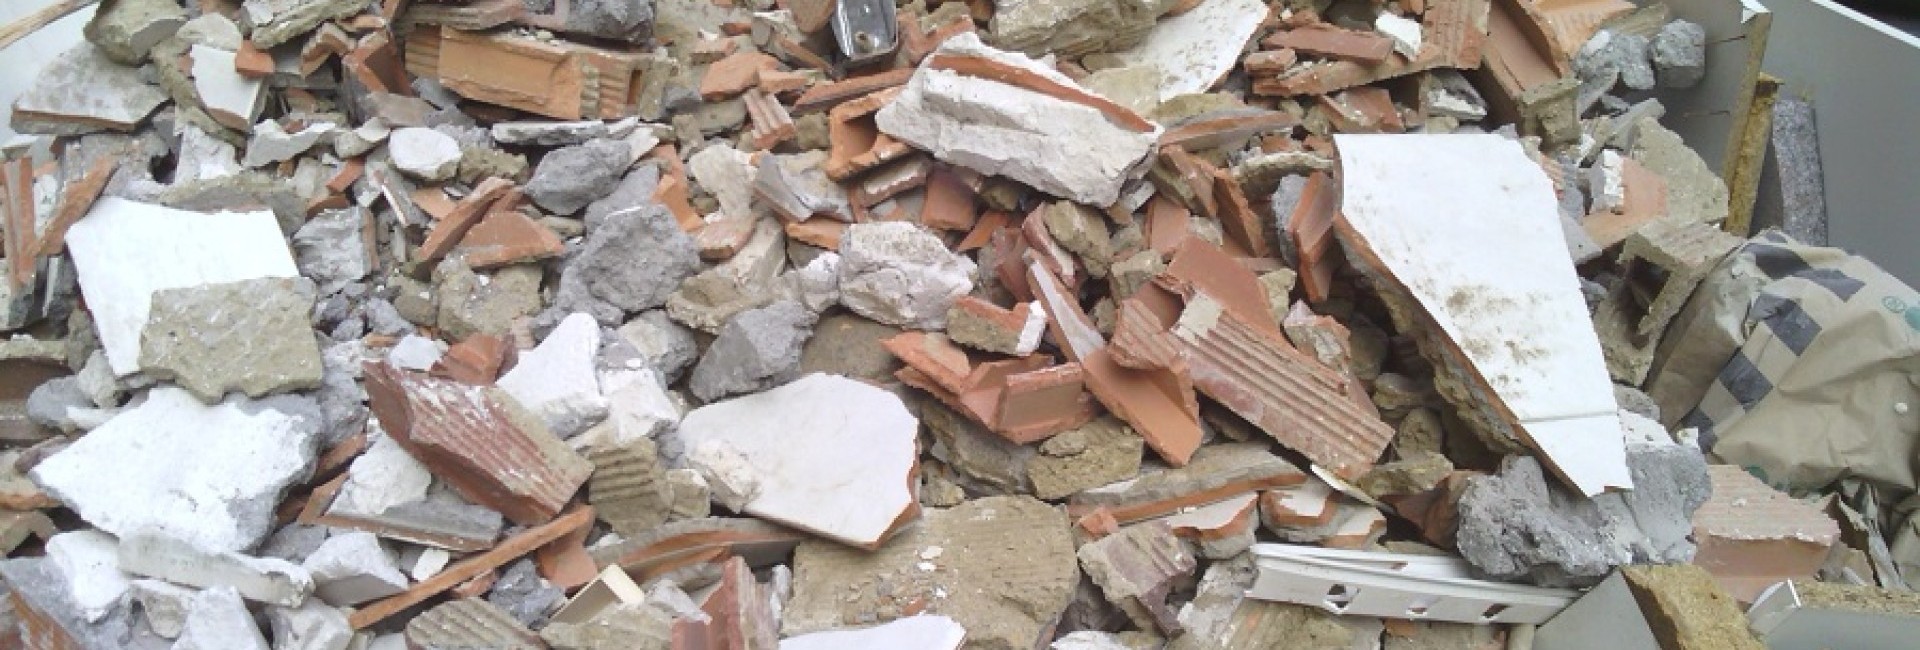  Tres cuartas partes de las constructoras españolas no cumple sus obligaciones legales en materia de gestión de residuos de construcción y demolición